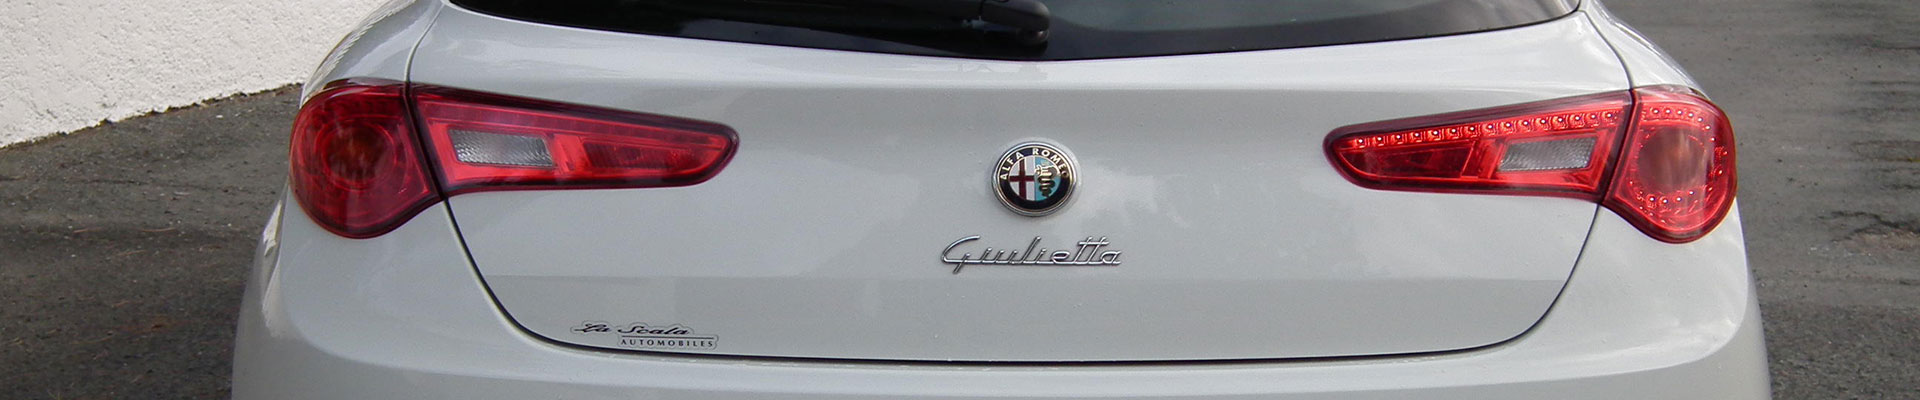 Autoverzekering Alfa Romeo Giulietta